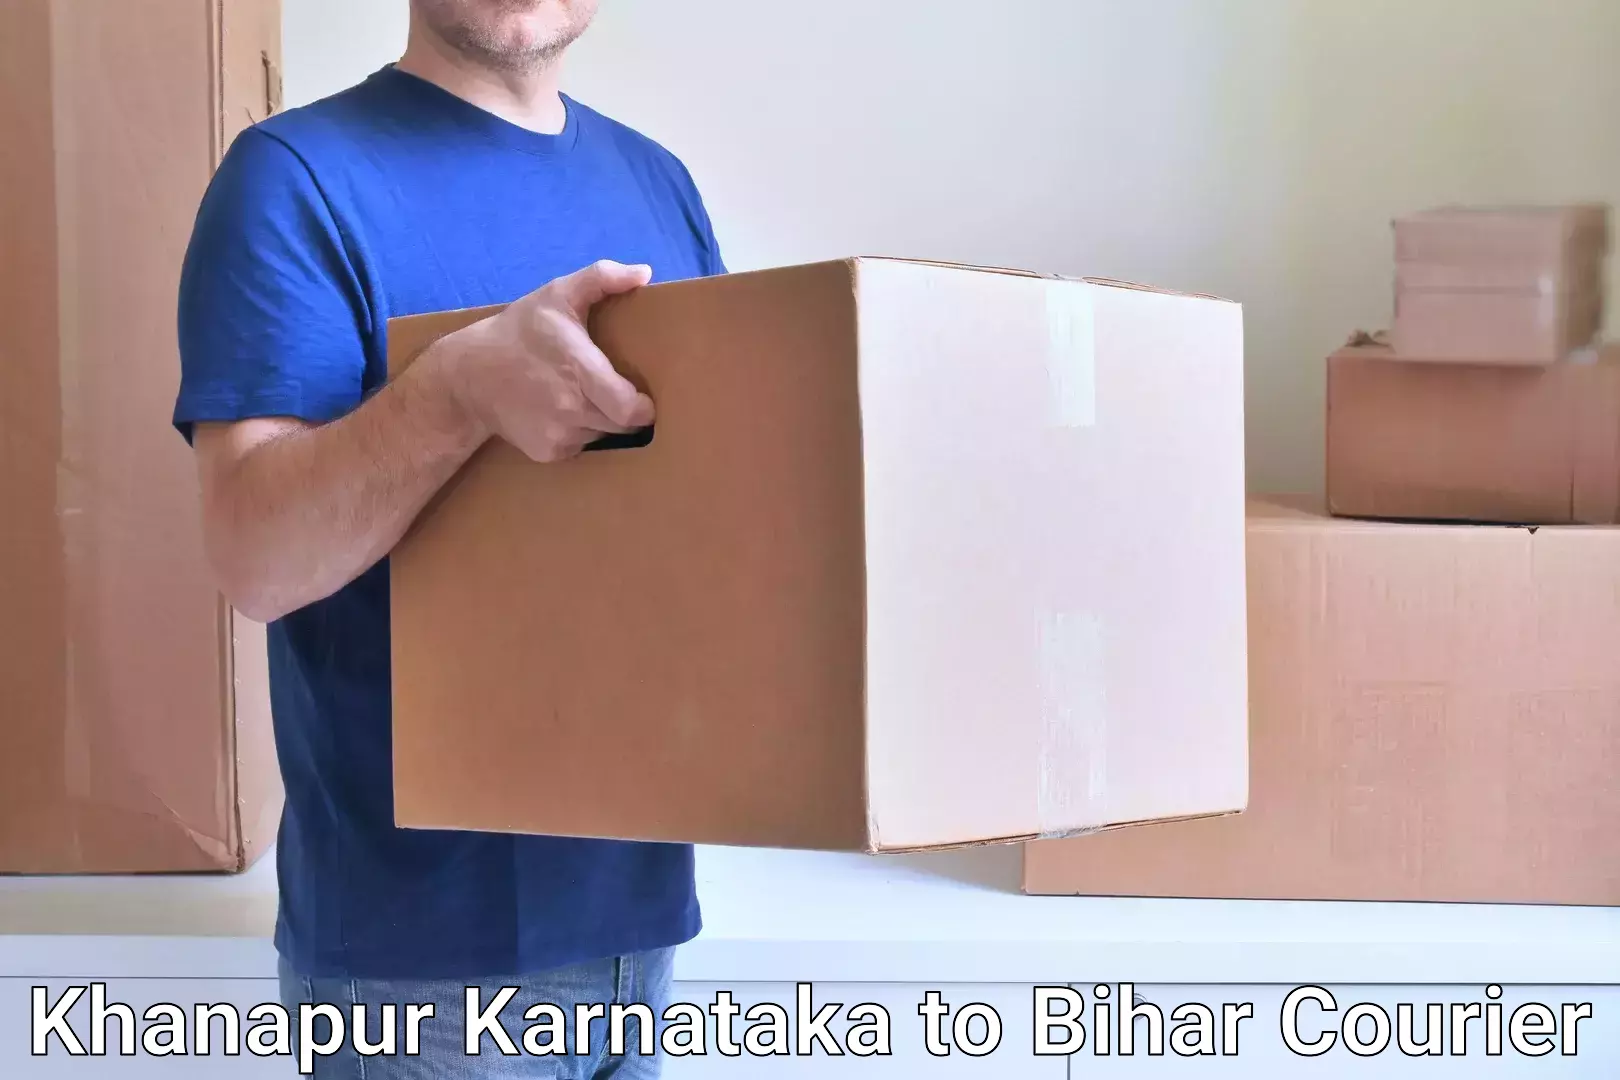 Express delivery capabilities Khanapur Karnataka to Bakhri